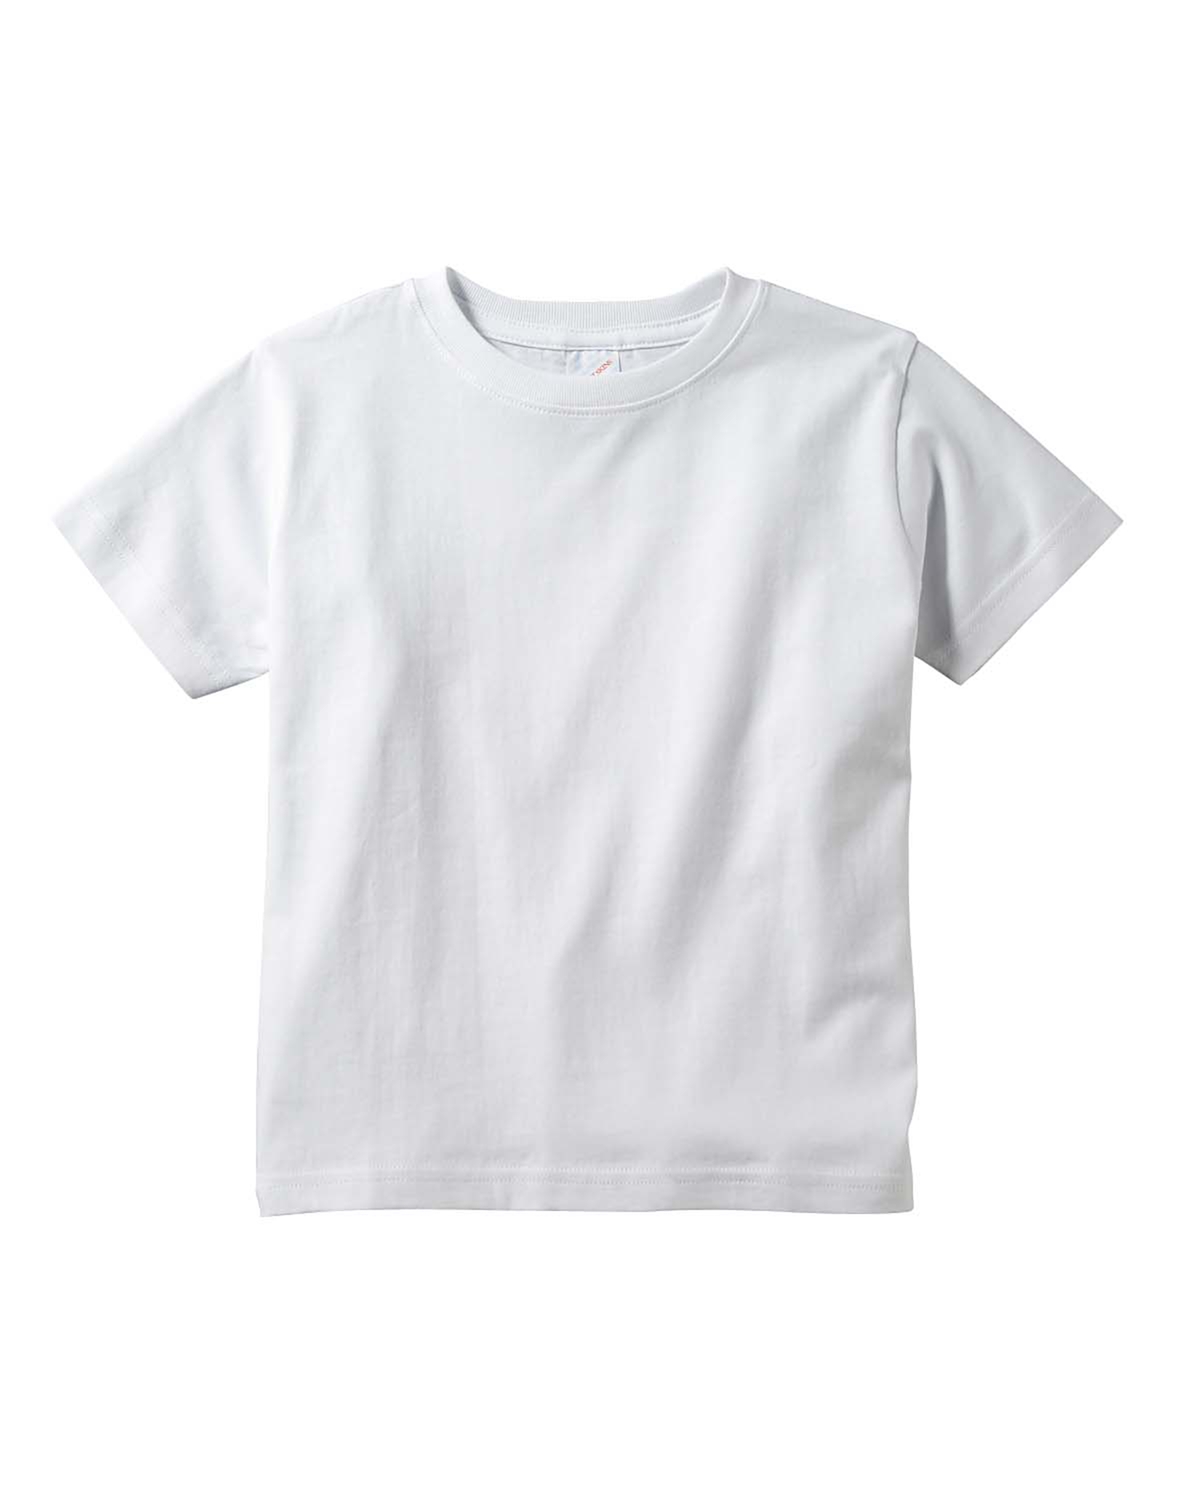 Download Rabbit Skins 3321 Toddler Fine Jersey T-Shirt - Shirtmax